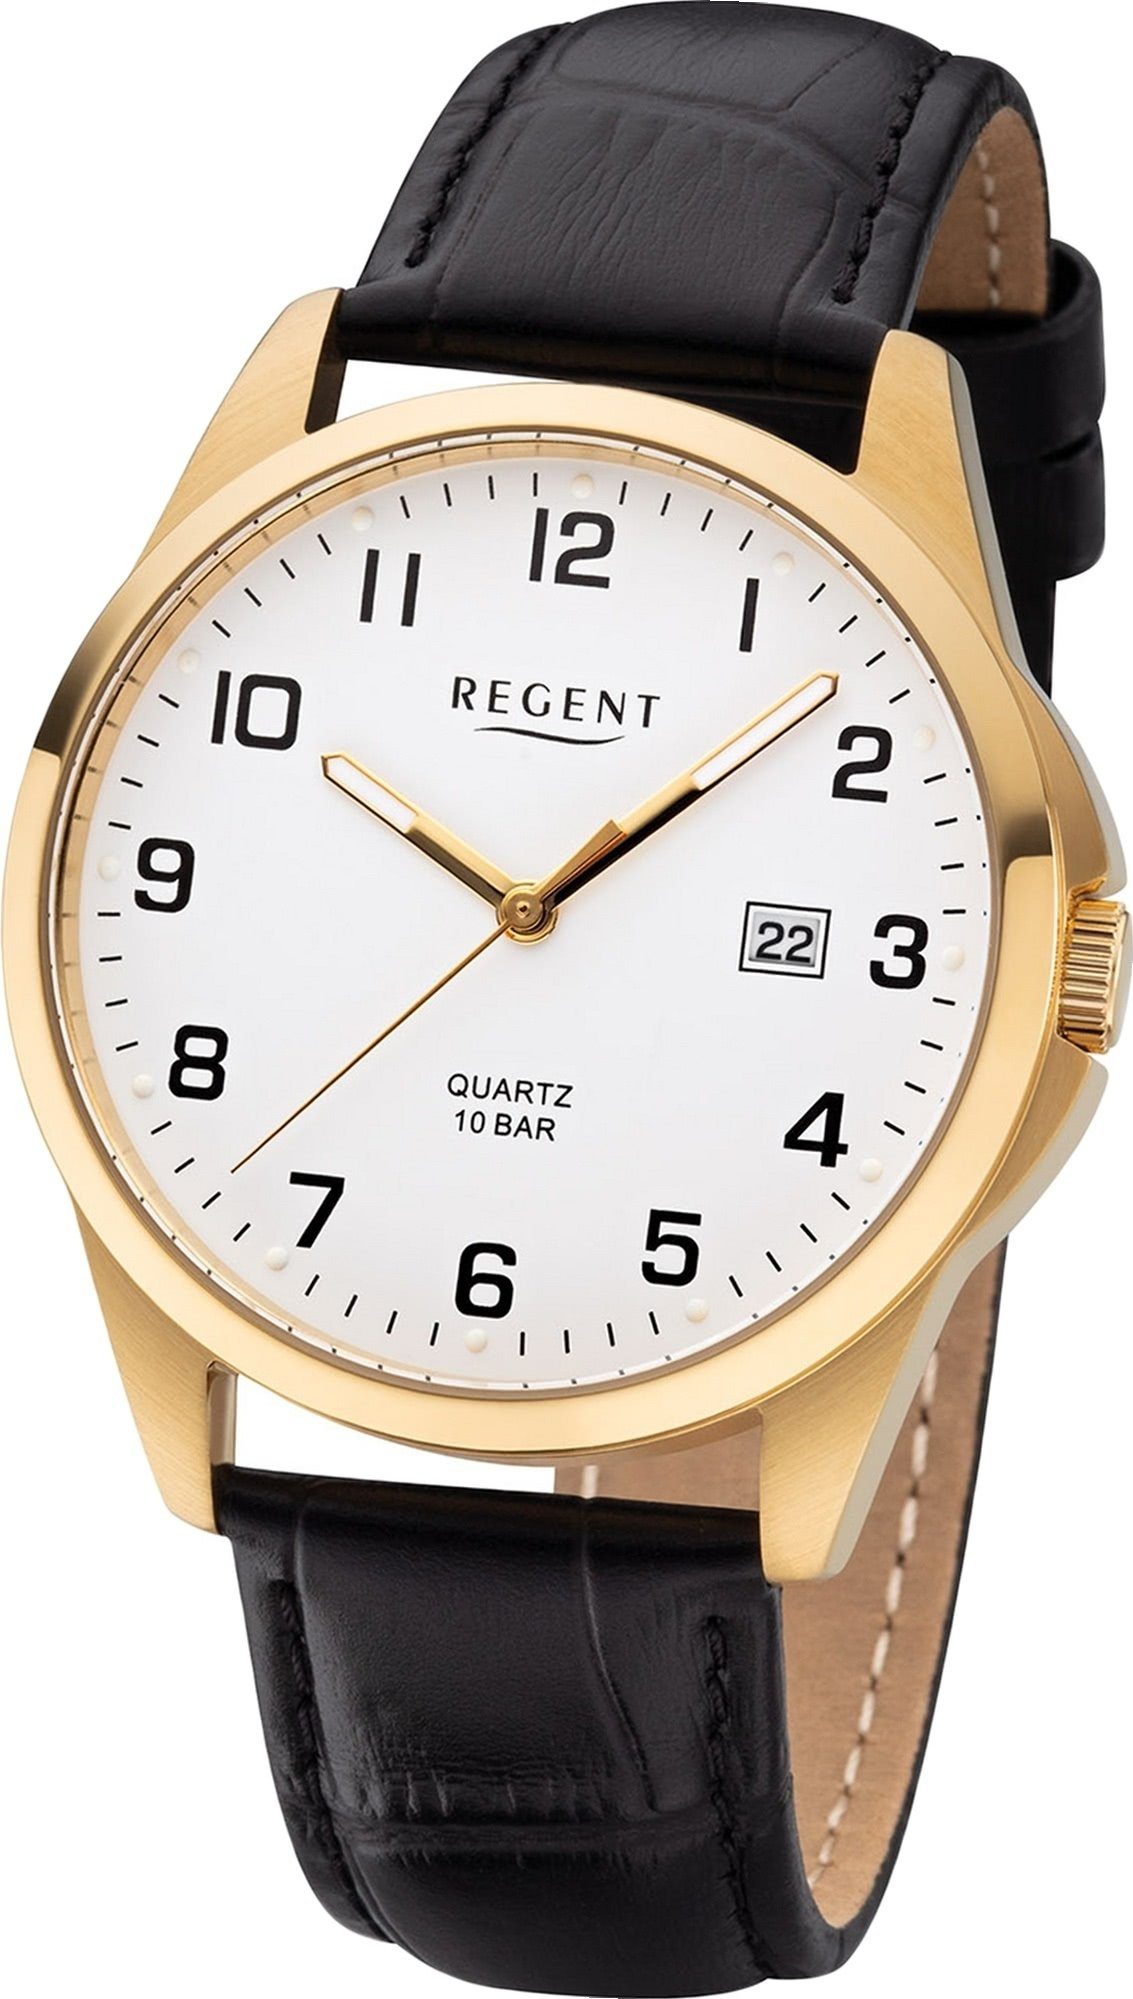 Regent Quarzuhr Regent Leder Herren Uhr F-1226 Analog, Herrenuhr Lederarmband schwarz, rundes Gehäuse, mittel (ca. 36mm)